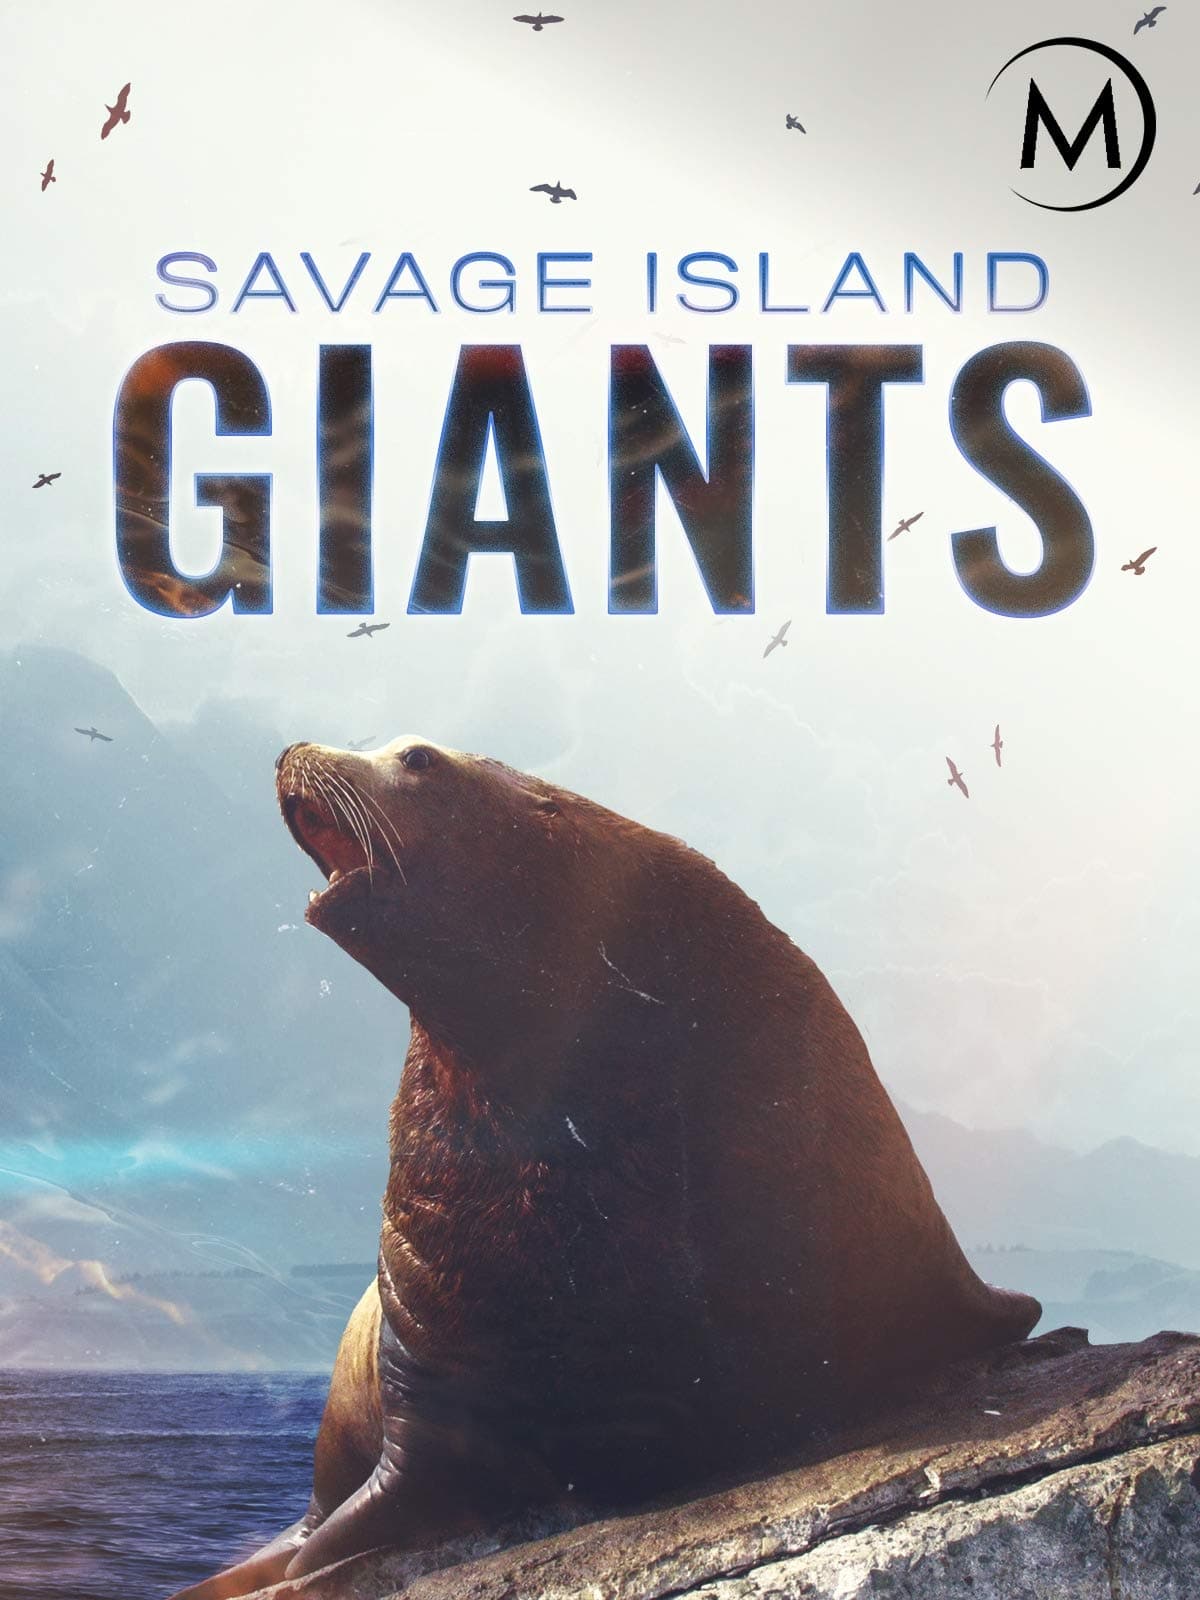 Savage Island Giants